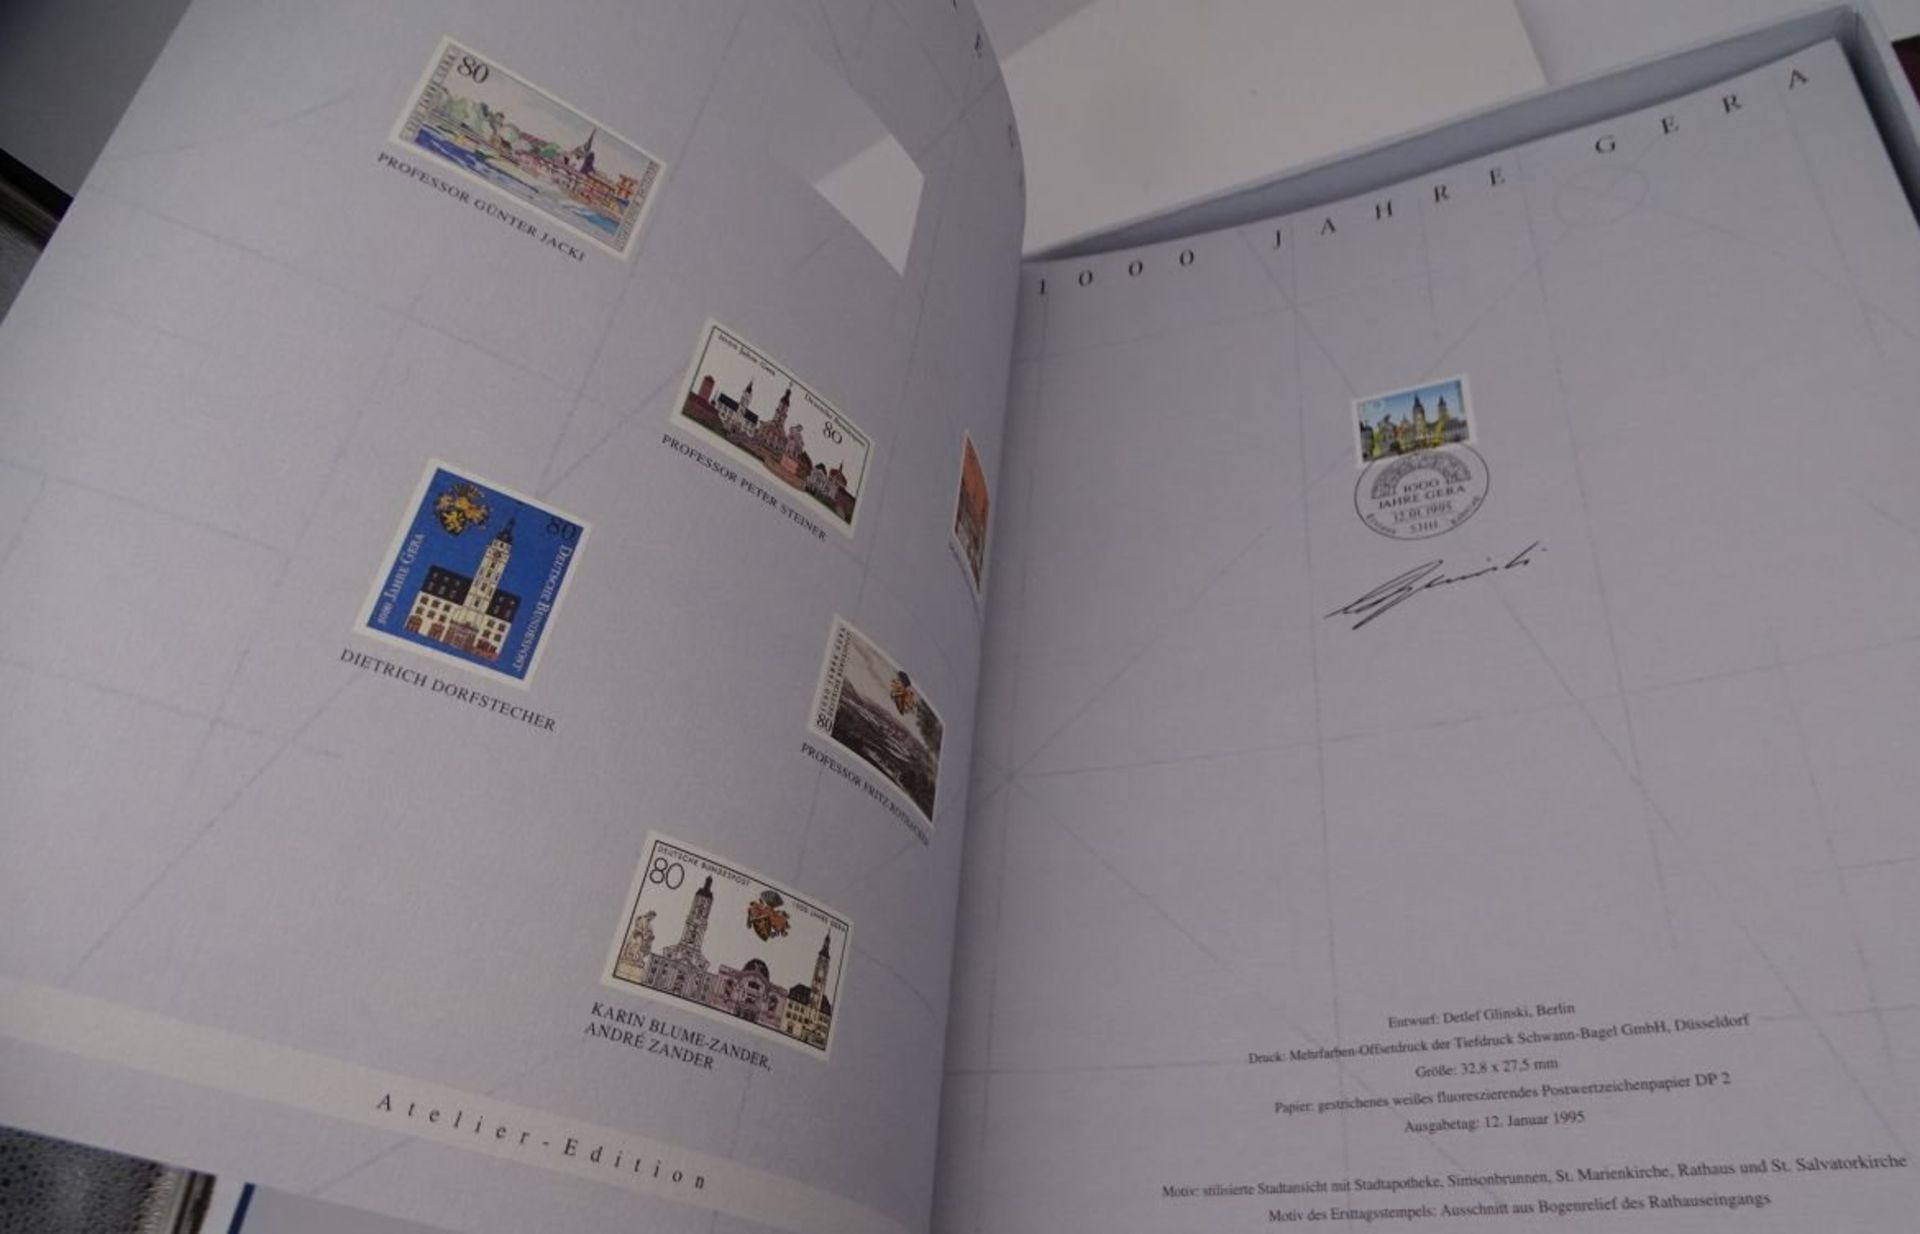 2 Grossbände Briefmarken Bund Atelier-Edition, 1995 und 1994,komplett. limitierte Auflagen - Image 6 of 11